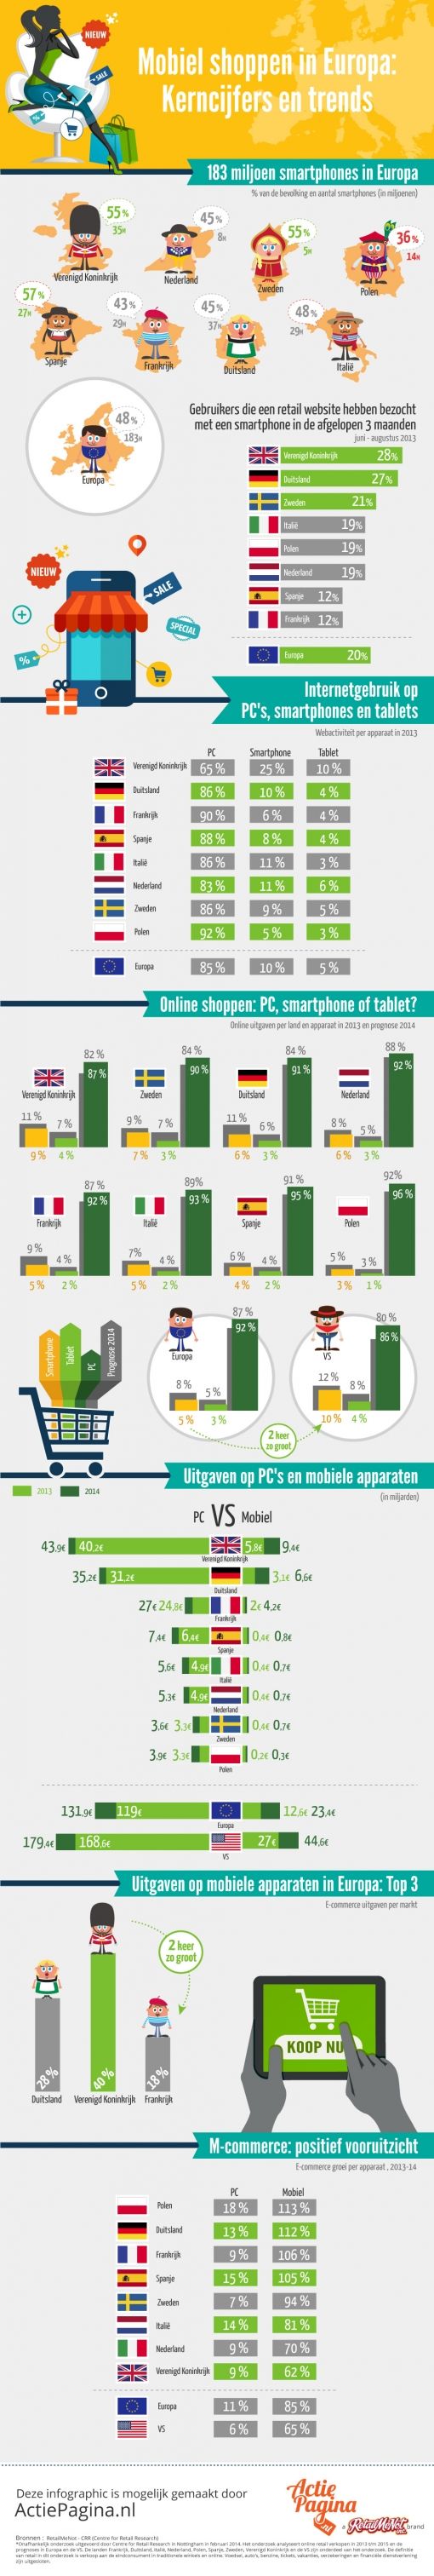 RetailMeNot_Mobile_infographic